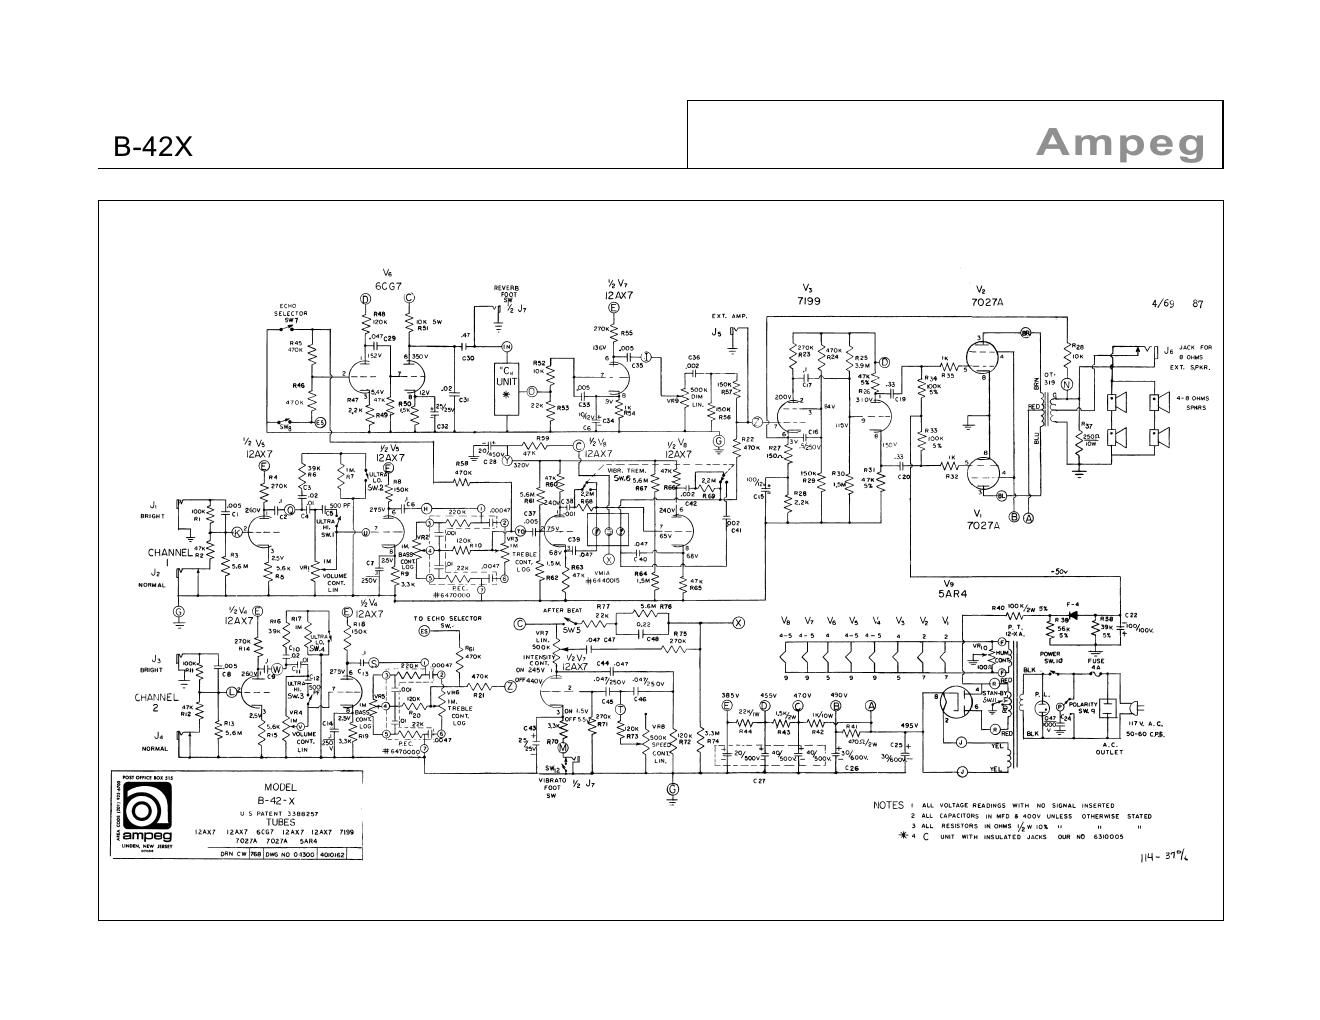 ampeg b 42 x 7 68 schematic